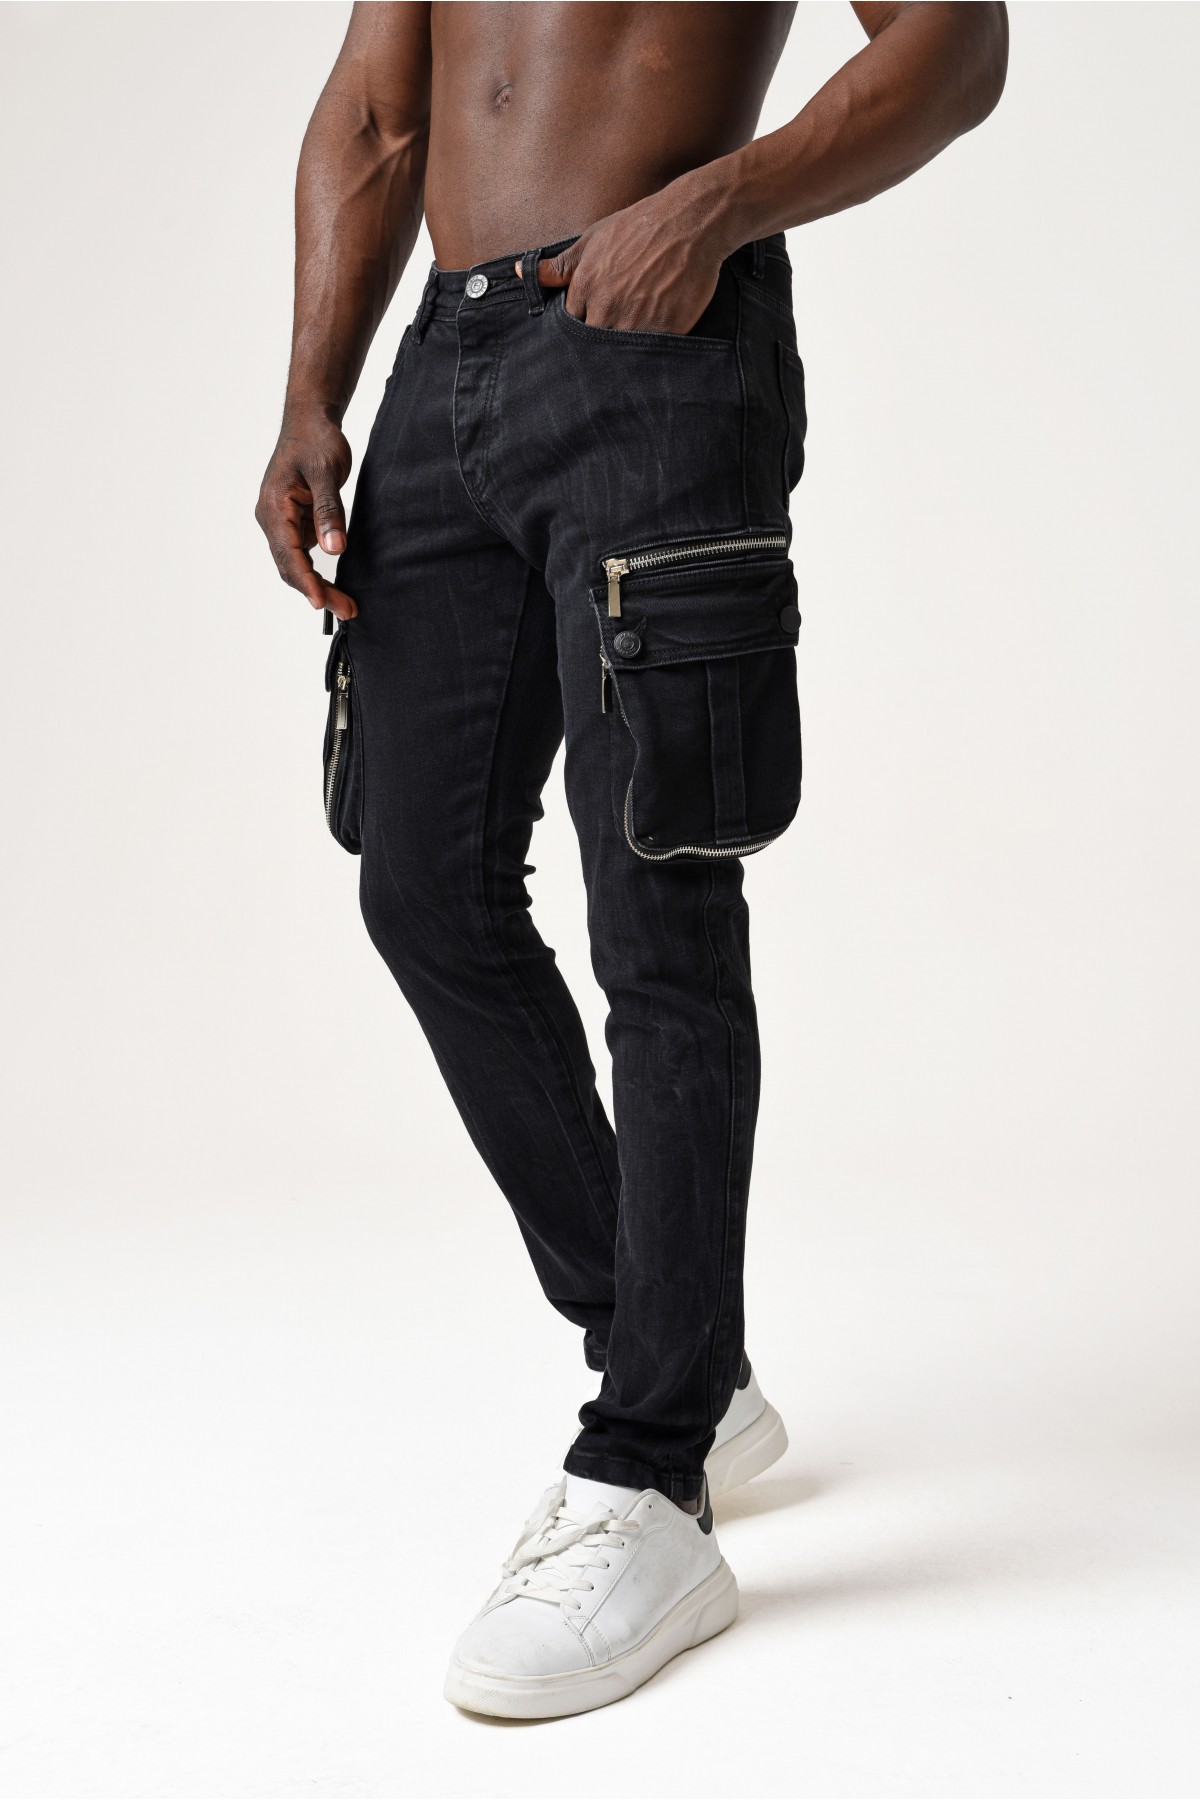 Erkek Denim Pantolon - Belde Siyah morato etiketi ve kargo cep - Koyu Gri